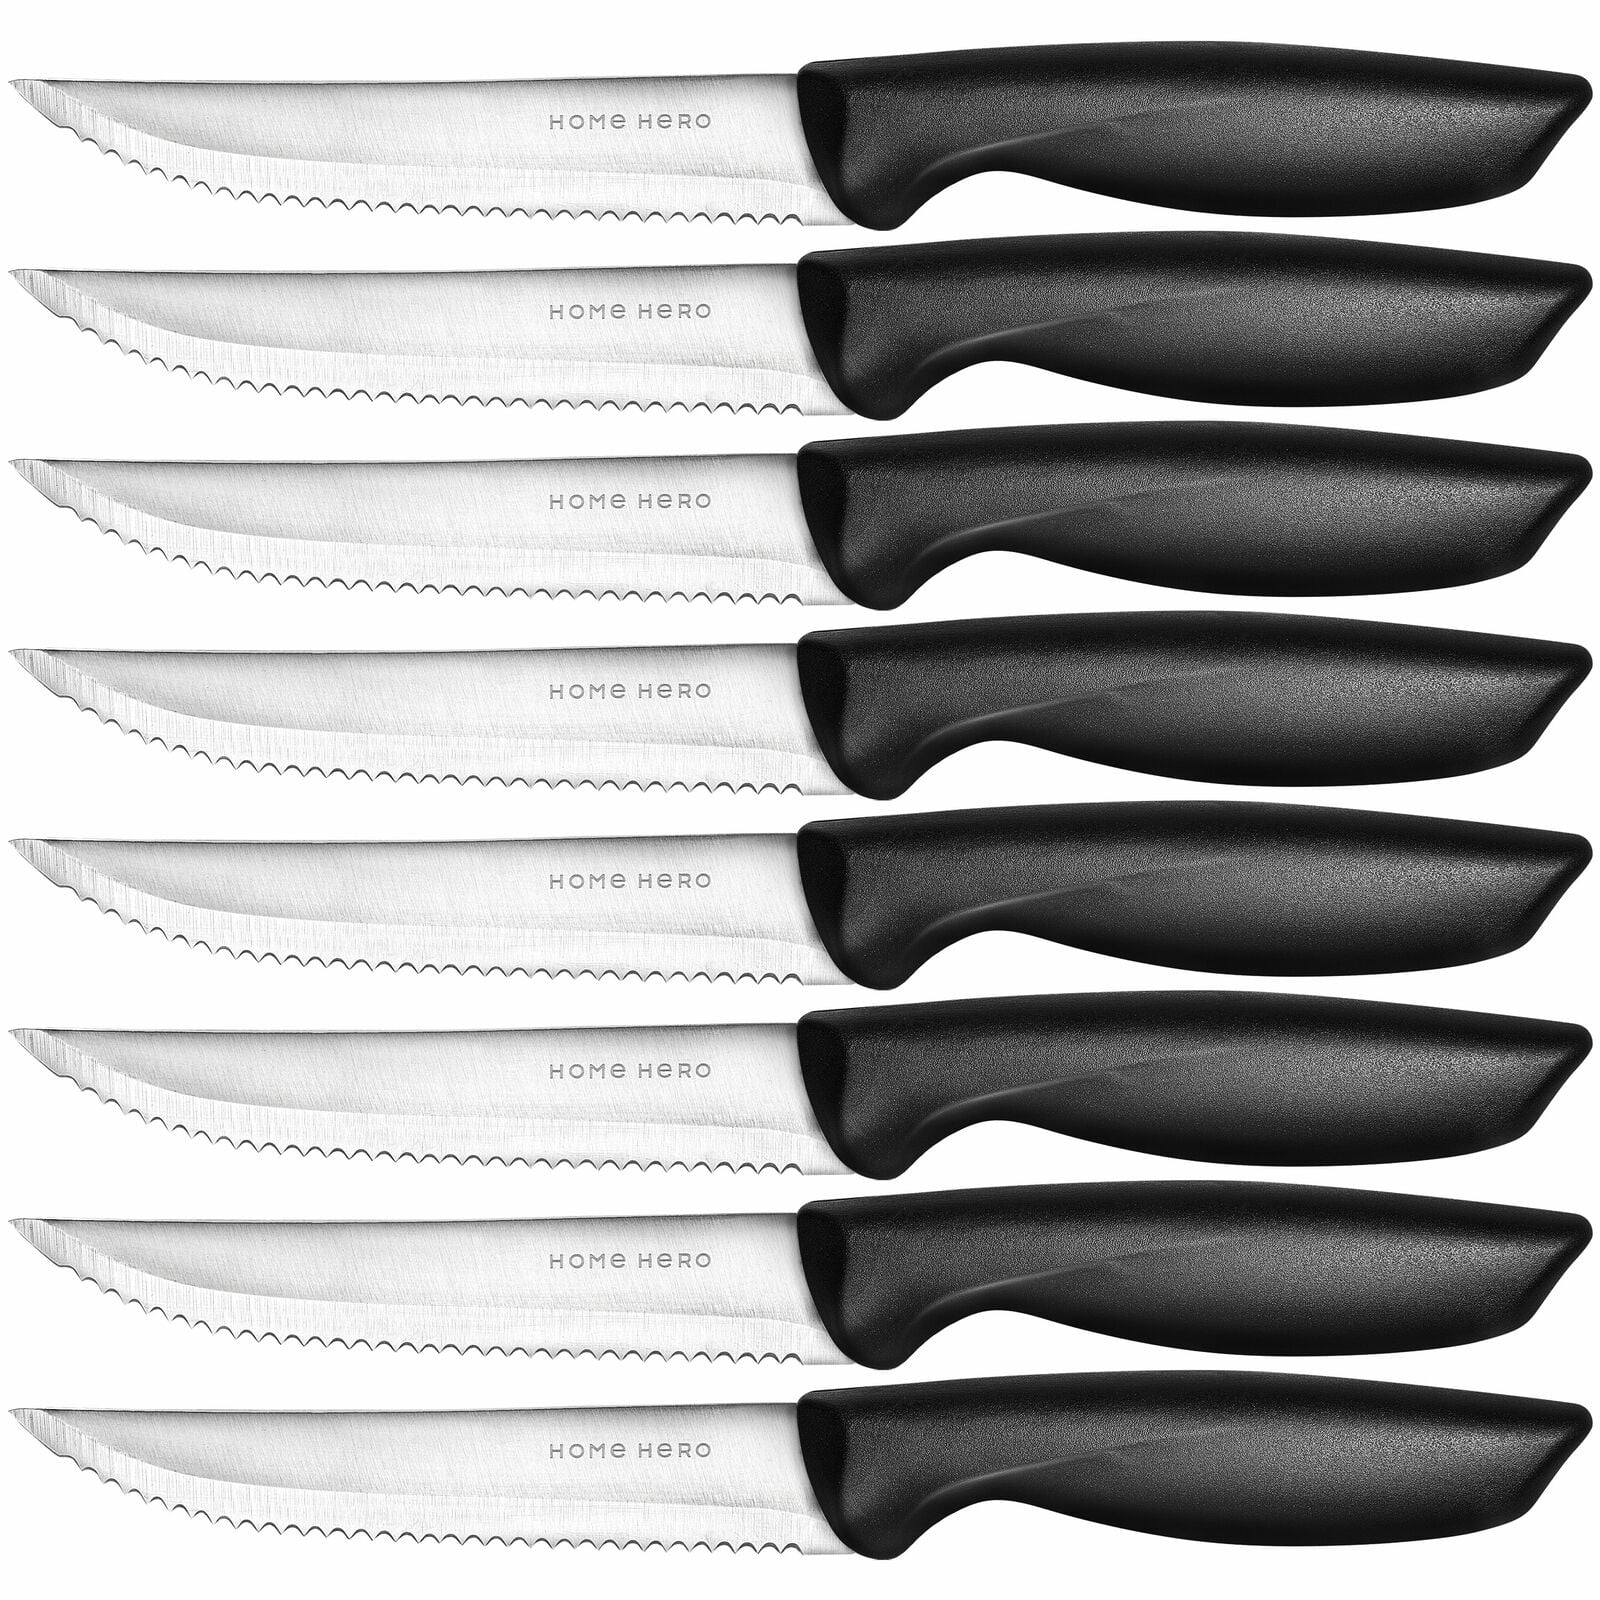 Steinbrücke Steak Knife Set of 8 Pcs with Wooden Handle, Knives